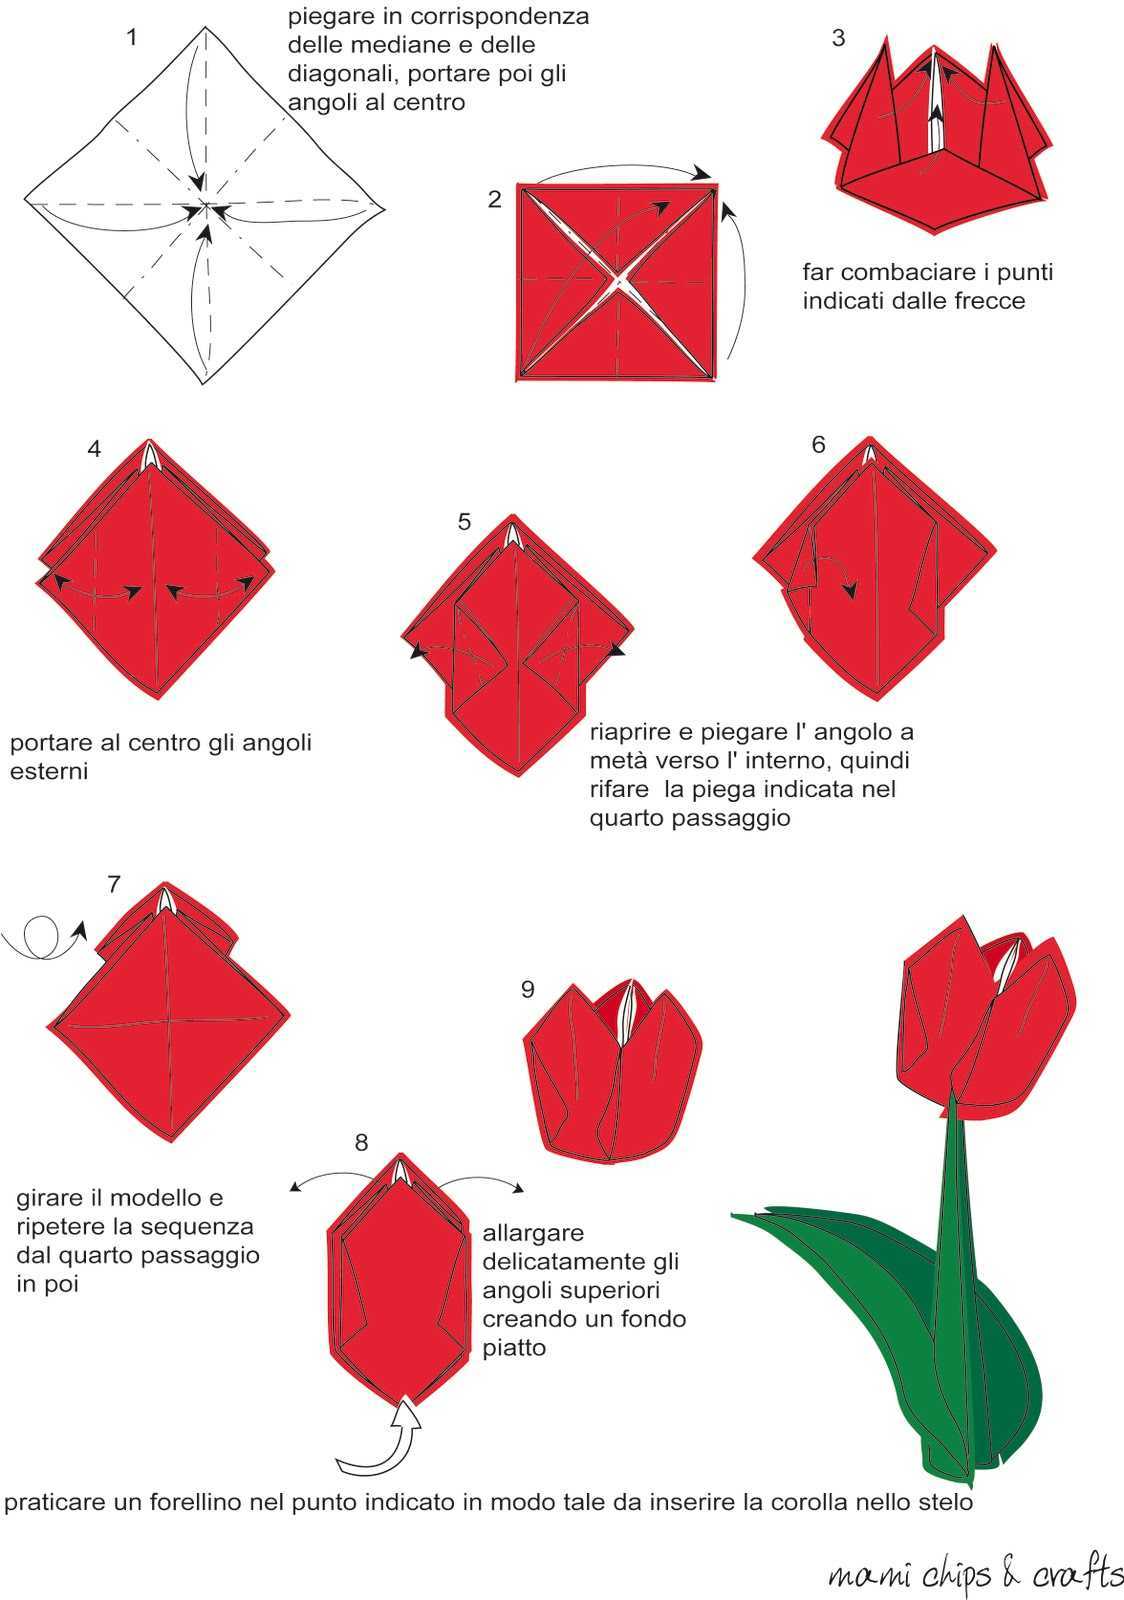 Как сделать тюльпан из бумаги поэтапно. Оригами тюльпан схема. Оригами тюльпан пошагово для начинающих. Схема оригами из бумаги тюльпан поэтапно для начинающих. Тюльпан из бумаги пошагово для начинающих.